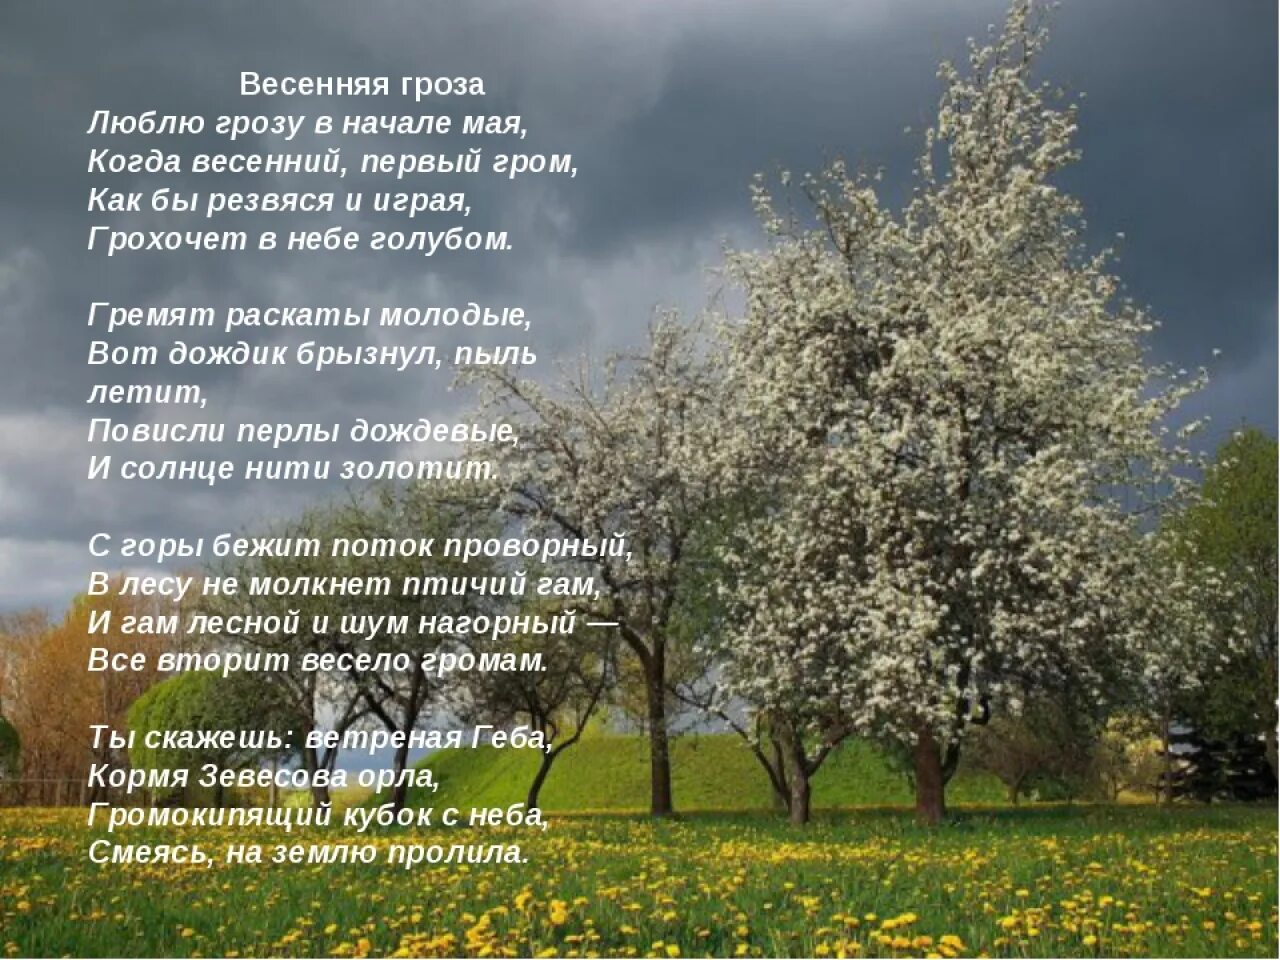 Весенние стихи. Стихи про май короткие. Стих про весну. Люблю грозу в начале мая стихотворение. Конец мая текст